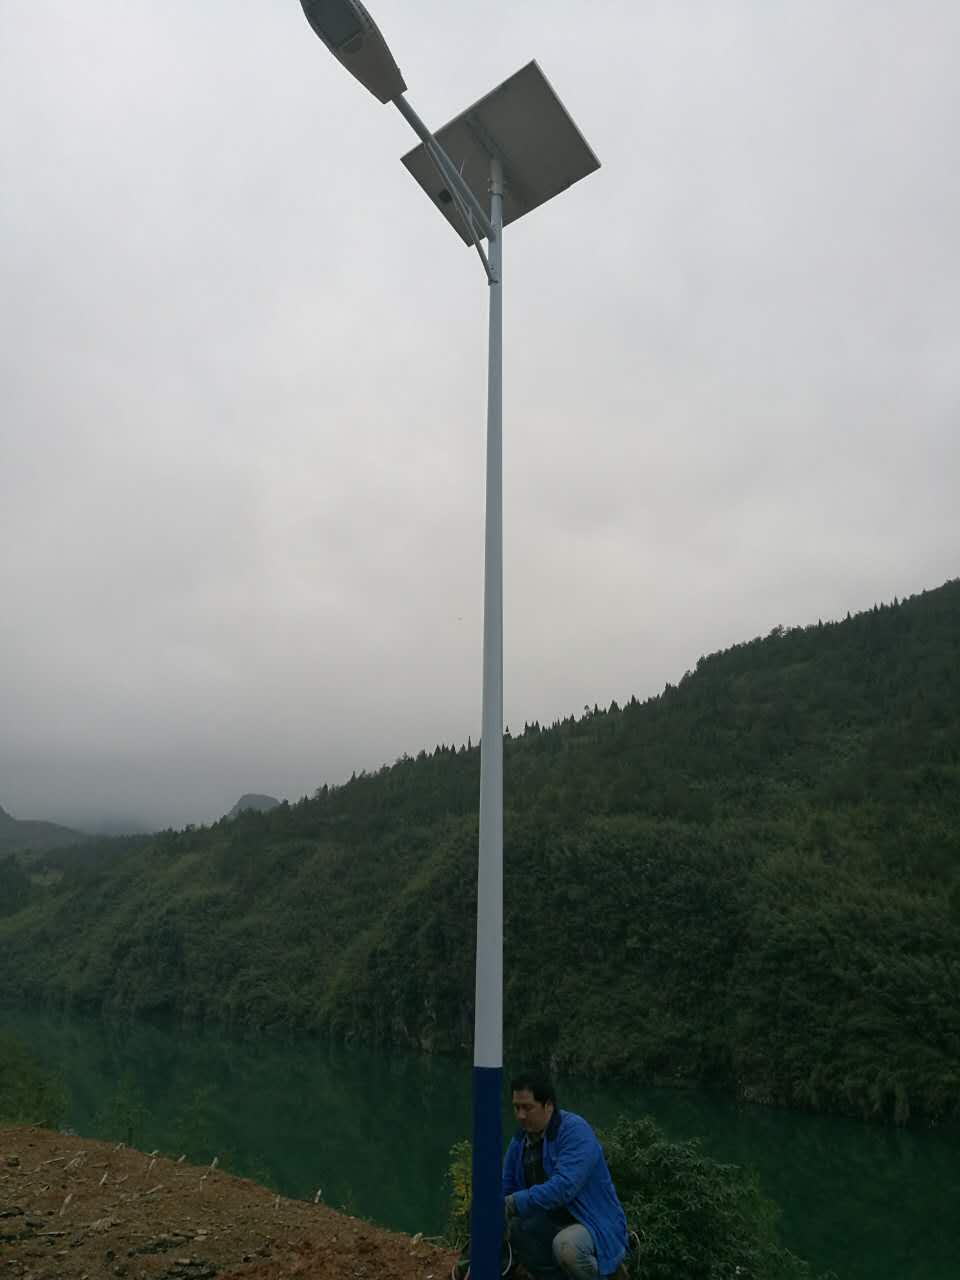 湖南LED太阳能路灯报价太阳能路灯控制器品牌